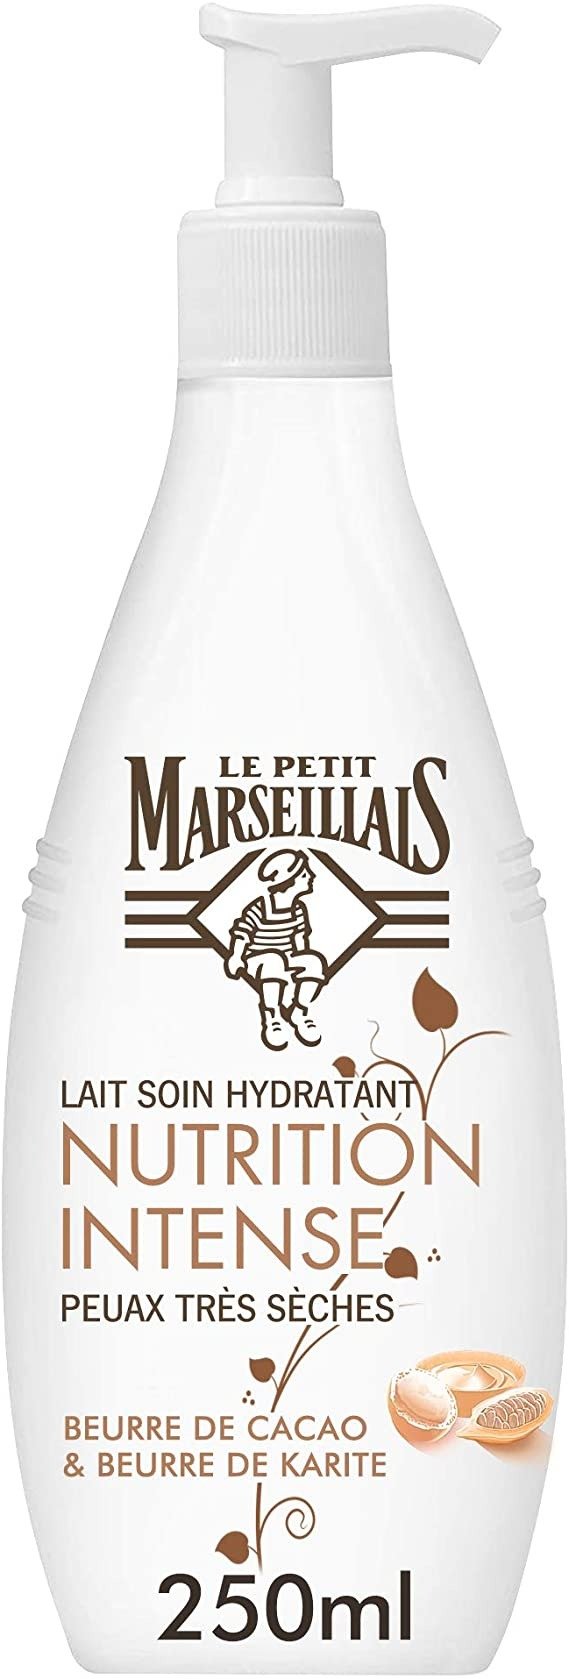 Le Petit Marseillais 乳油木身体乳 250ml